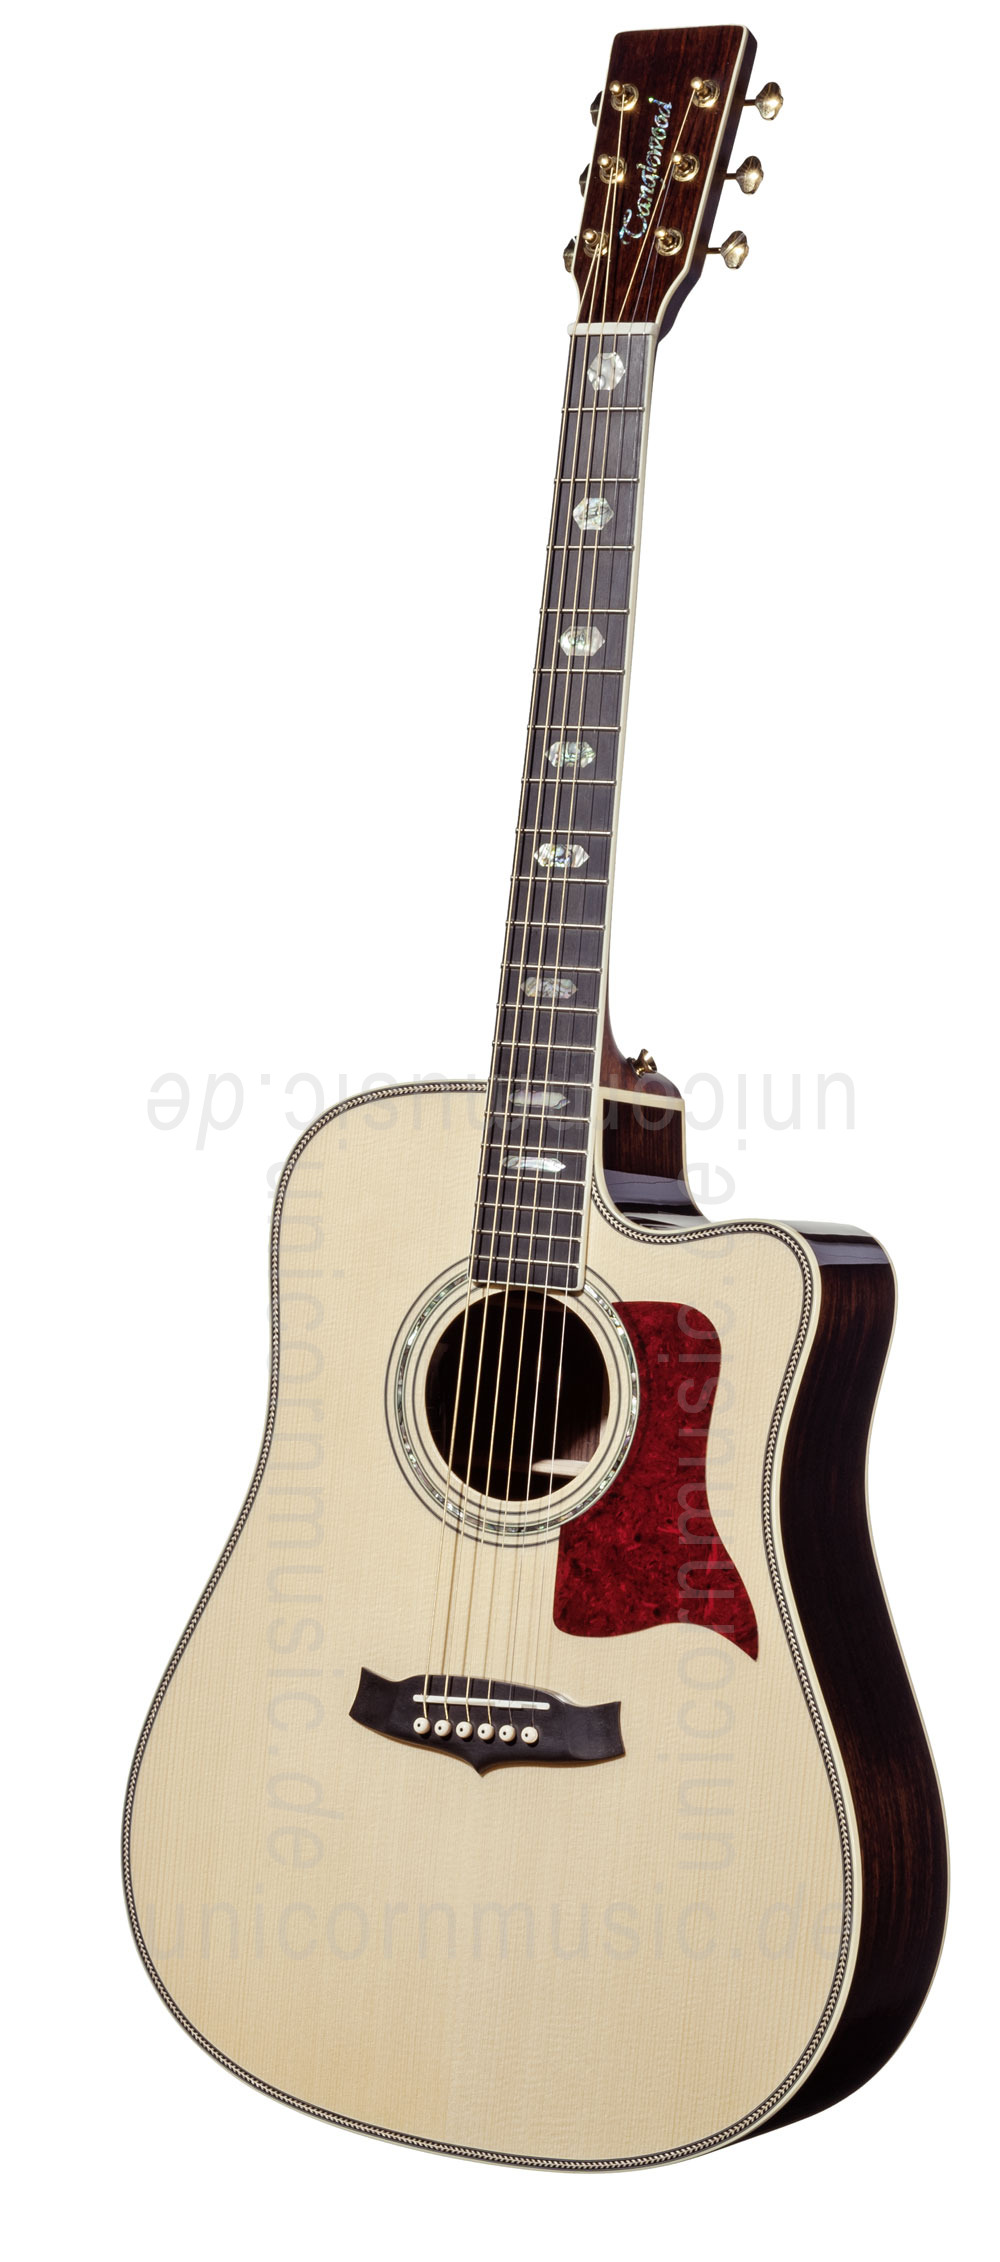 zur Artikelbeschreibung / Preis Western-Gitarre TANGLEWOOD TW1000/H SRC E - Heritage Series - Fishman Presys Blend - Cutaway - vollmassiv + Hardcase